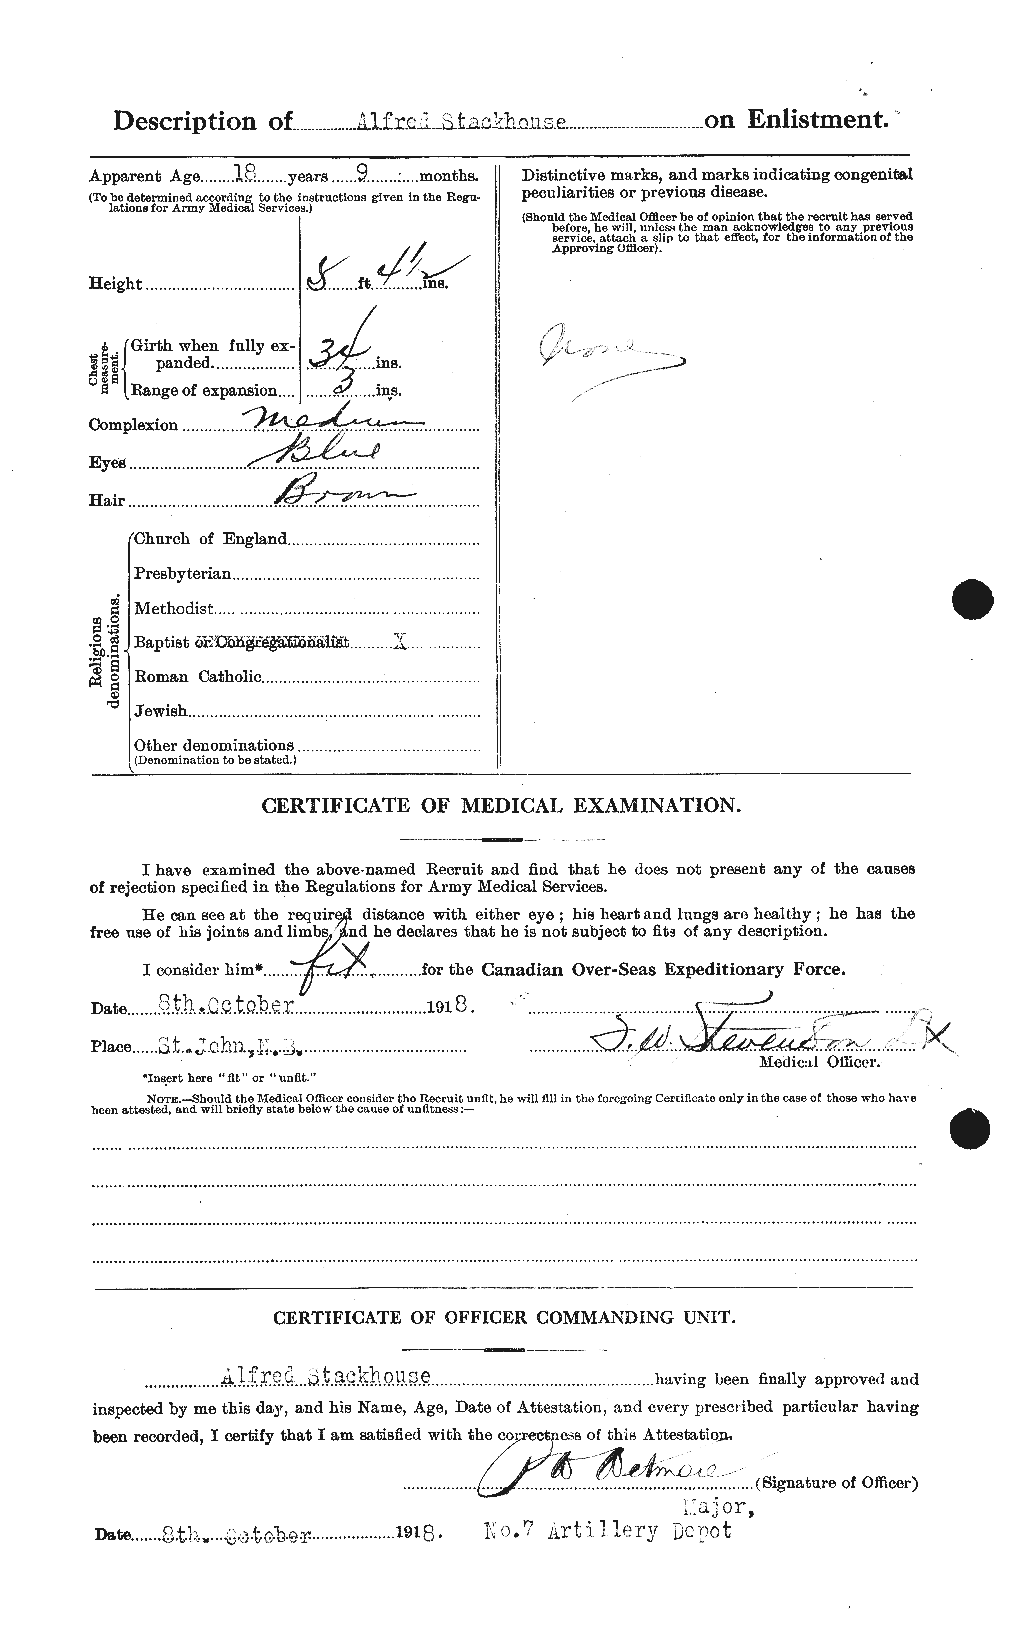 Dossiers du Personnel de la Première Guerre mondiale - CEC 622804b